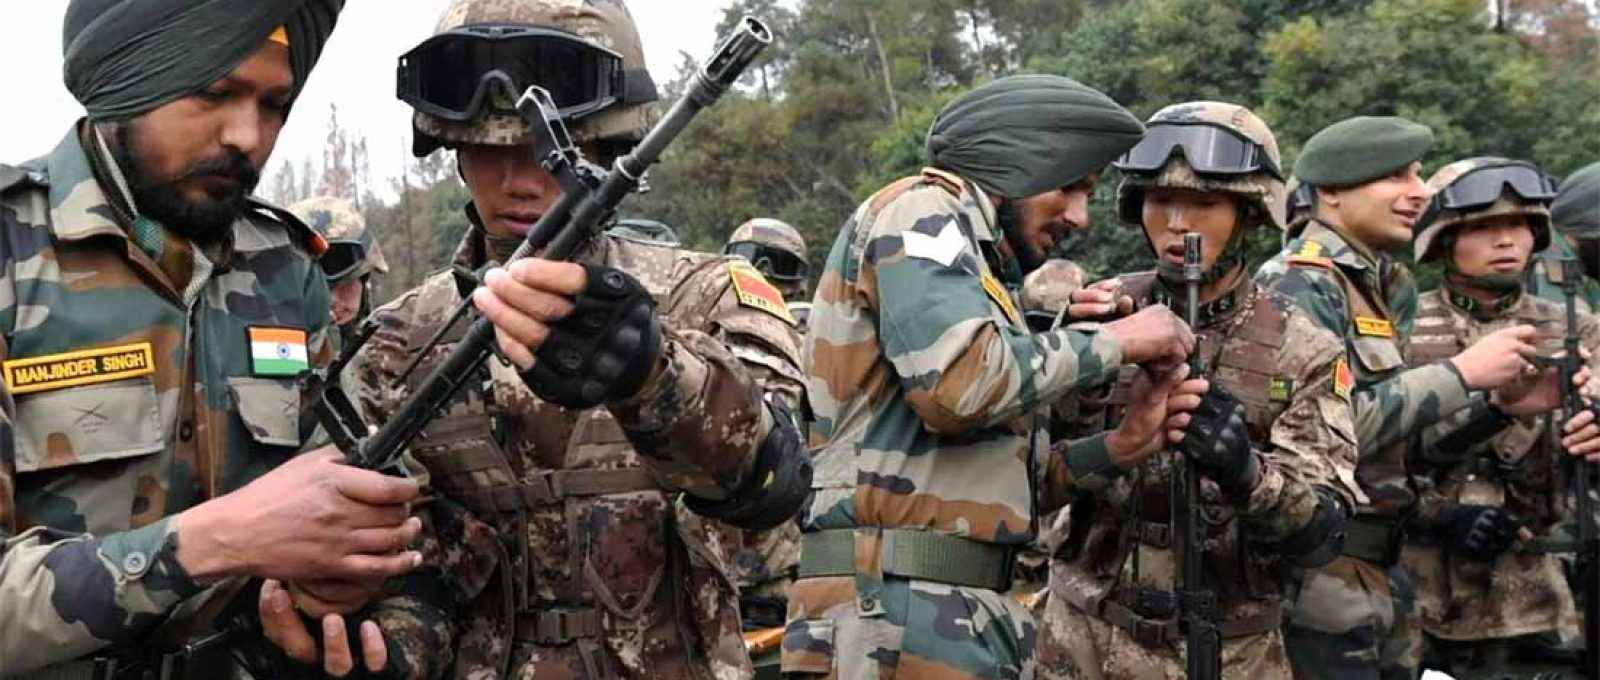 Soldados da China e da Índia participam do exercício conjunto Hand-in-Hand 2018 realizado em Chengdu, na província de Sichuan, China (Reuters).